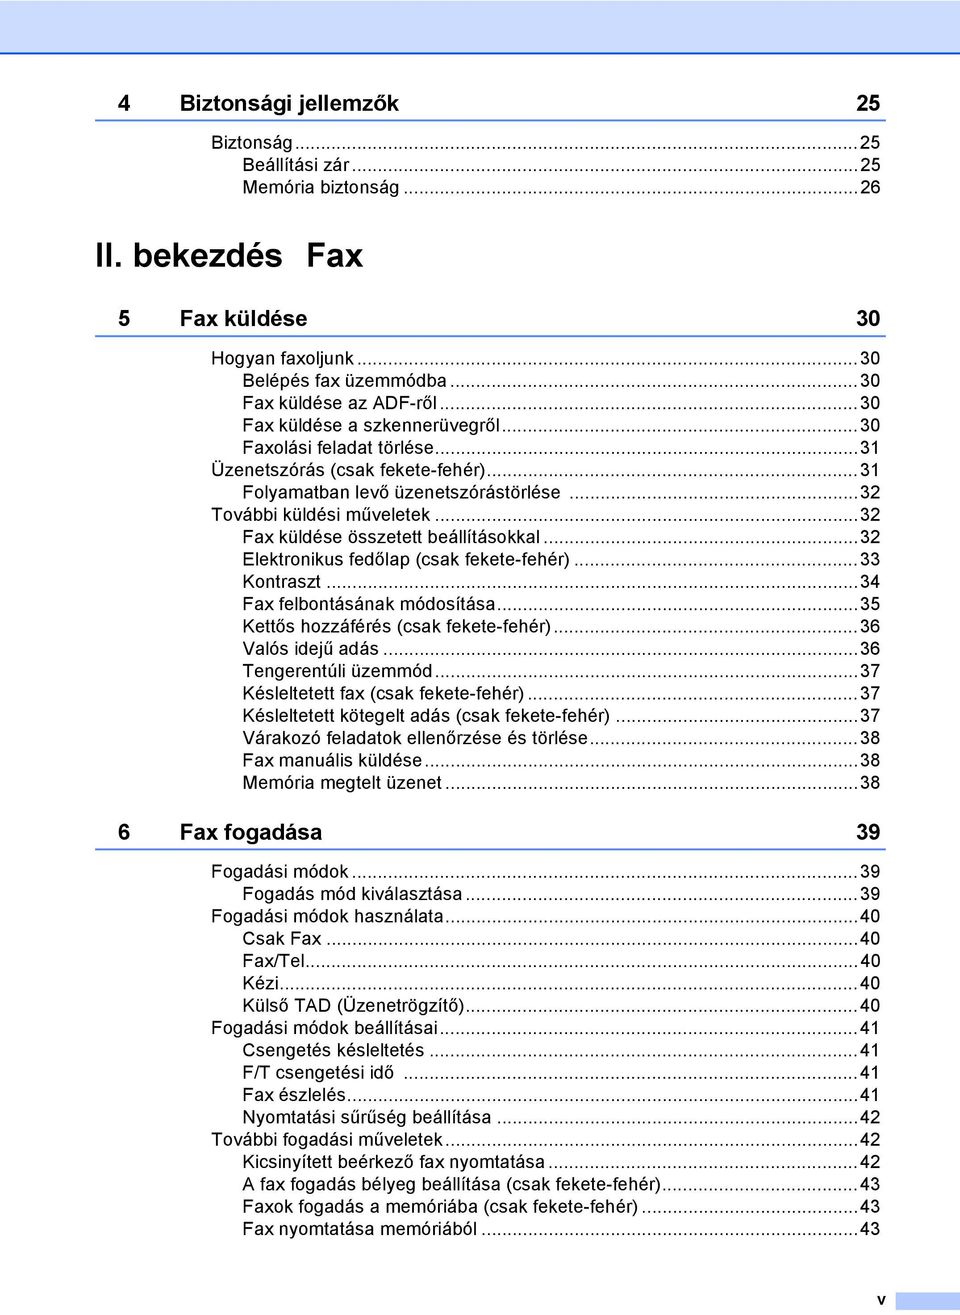 ..32 Fax küldése összetett beállításokkal...32 Elektronikus fedőlap (csak fekete-fehér)...33 Kontraszt...34 Fax felbontásának módosítása...35 Kettős hozzáférés (csak fekete-fehér)...36 Valós idejű adás.